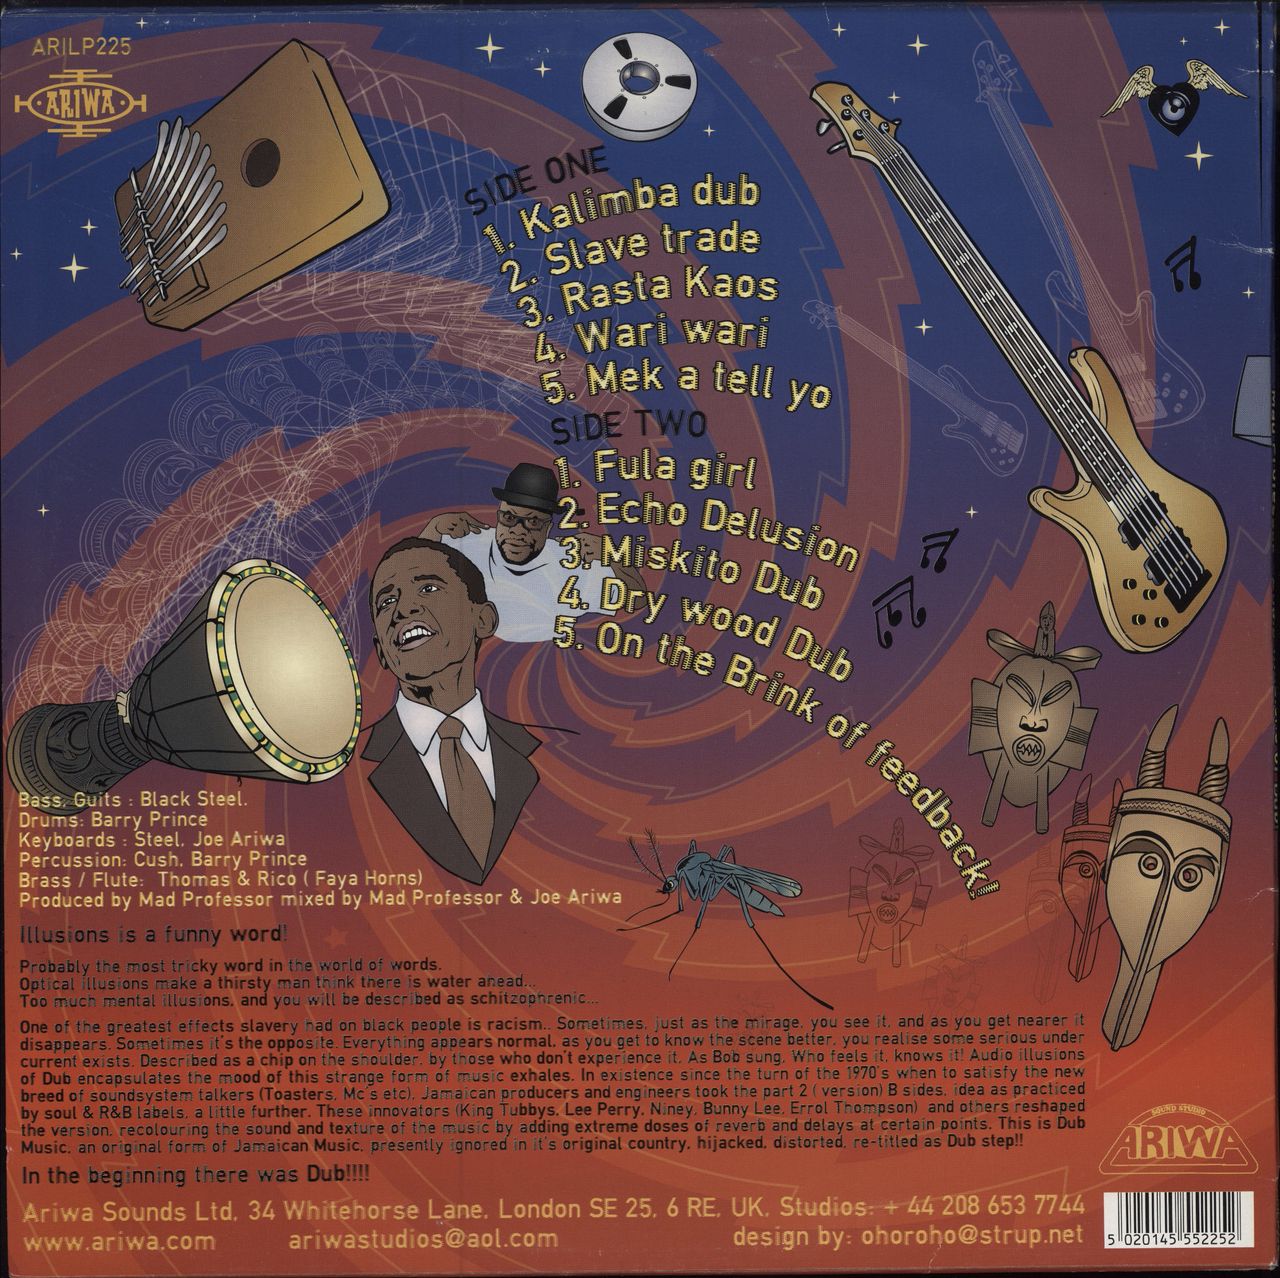 Mad Professor Audio Illusions Of Dub UK Vinyl LP — RareVinyl.com